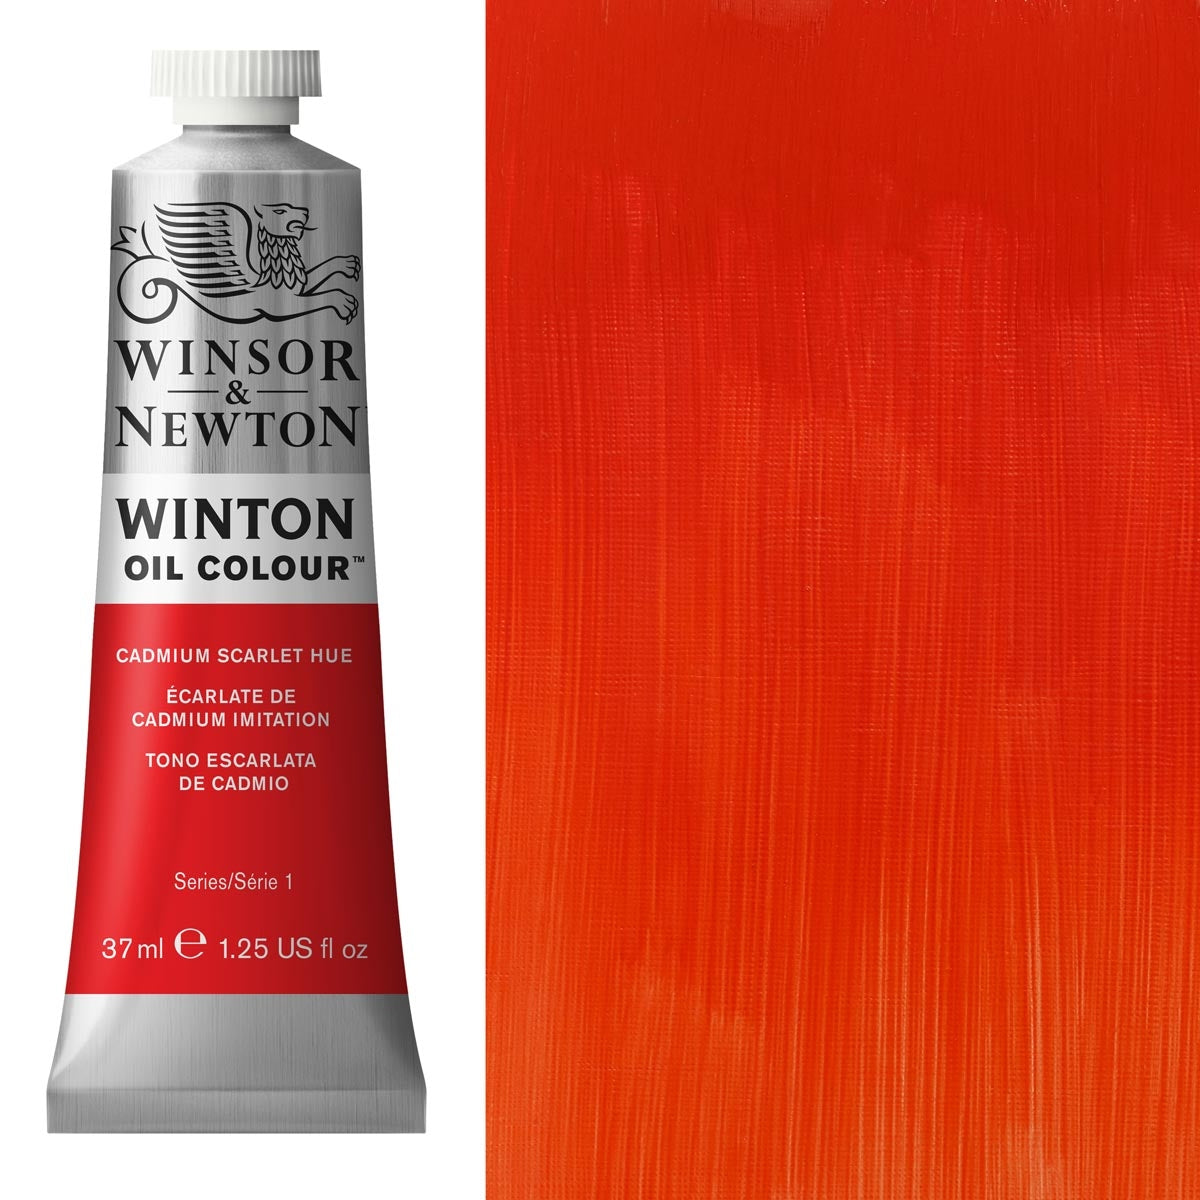 Winsor en Newton - Winton Oil Color - 37 ml - Cad Scarlet Hue